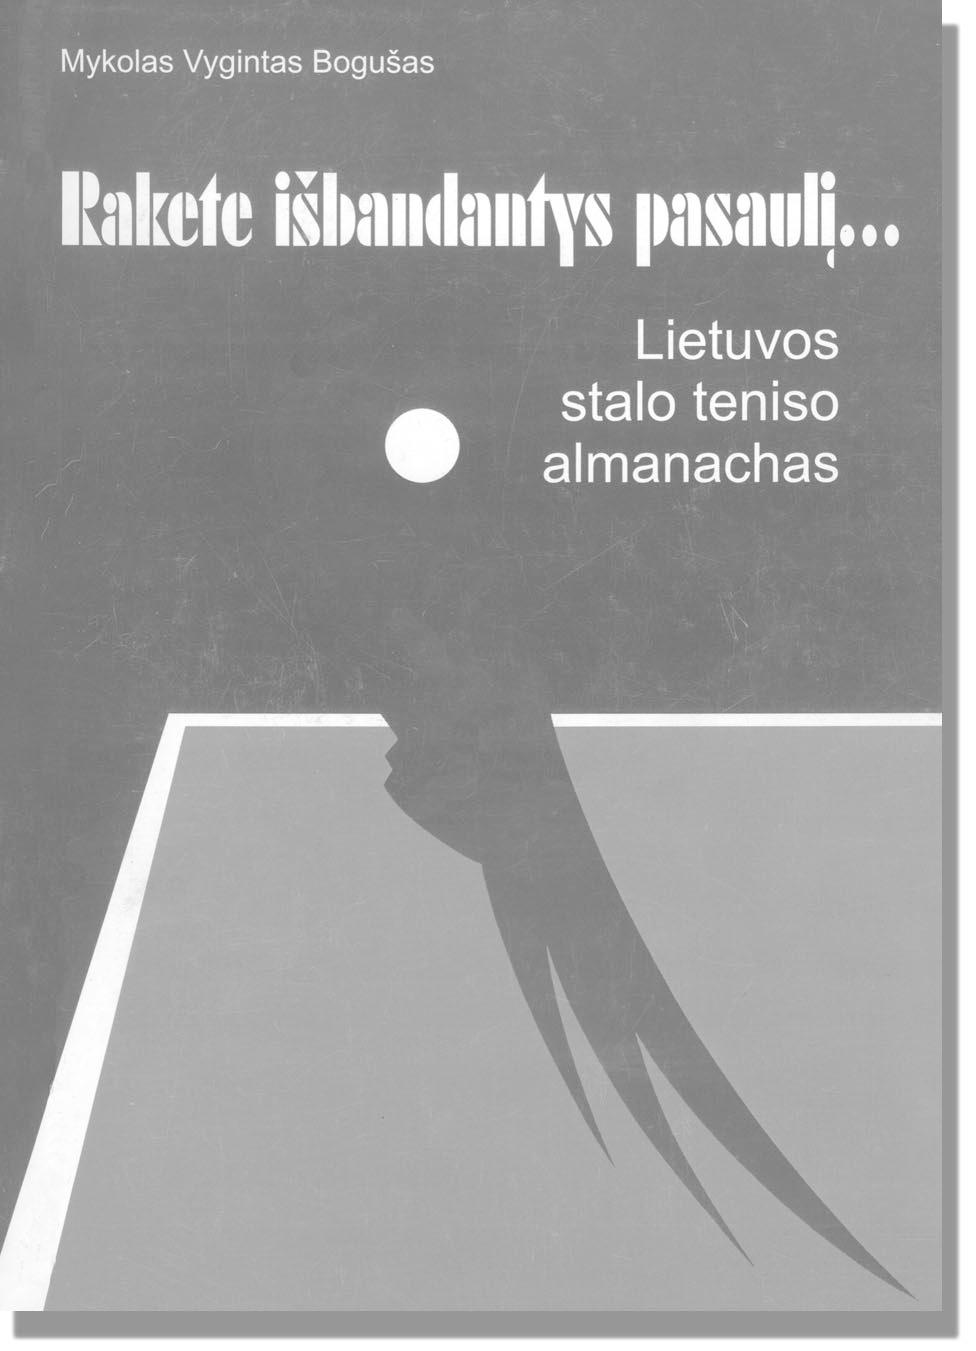 Naujos knygos EUROPOS SPORTO KONFERENCIJOS Pirmoji Europos sporto konferencija surengta 1973 metais Austrijos sostinëje Vienoje.